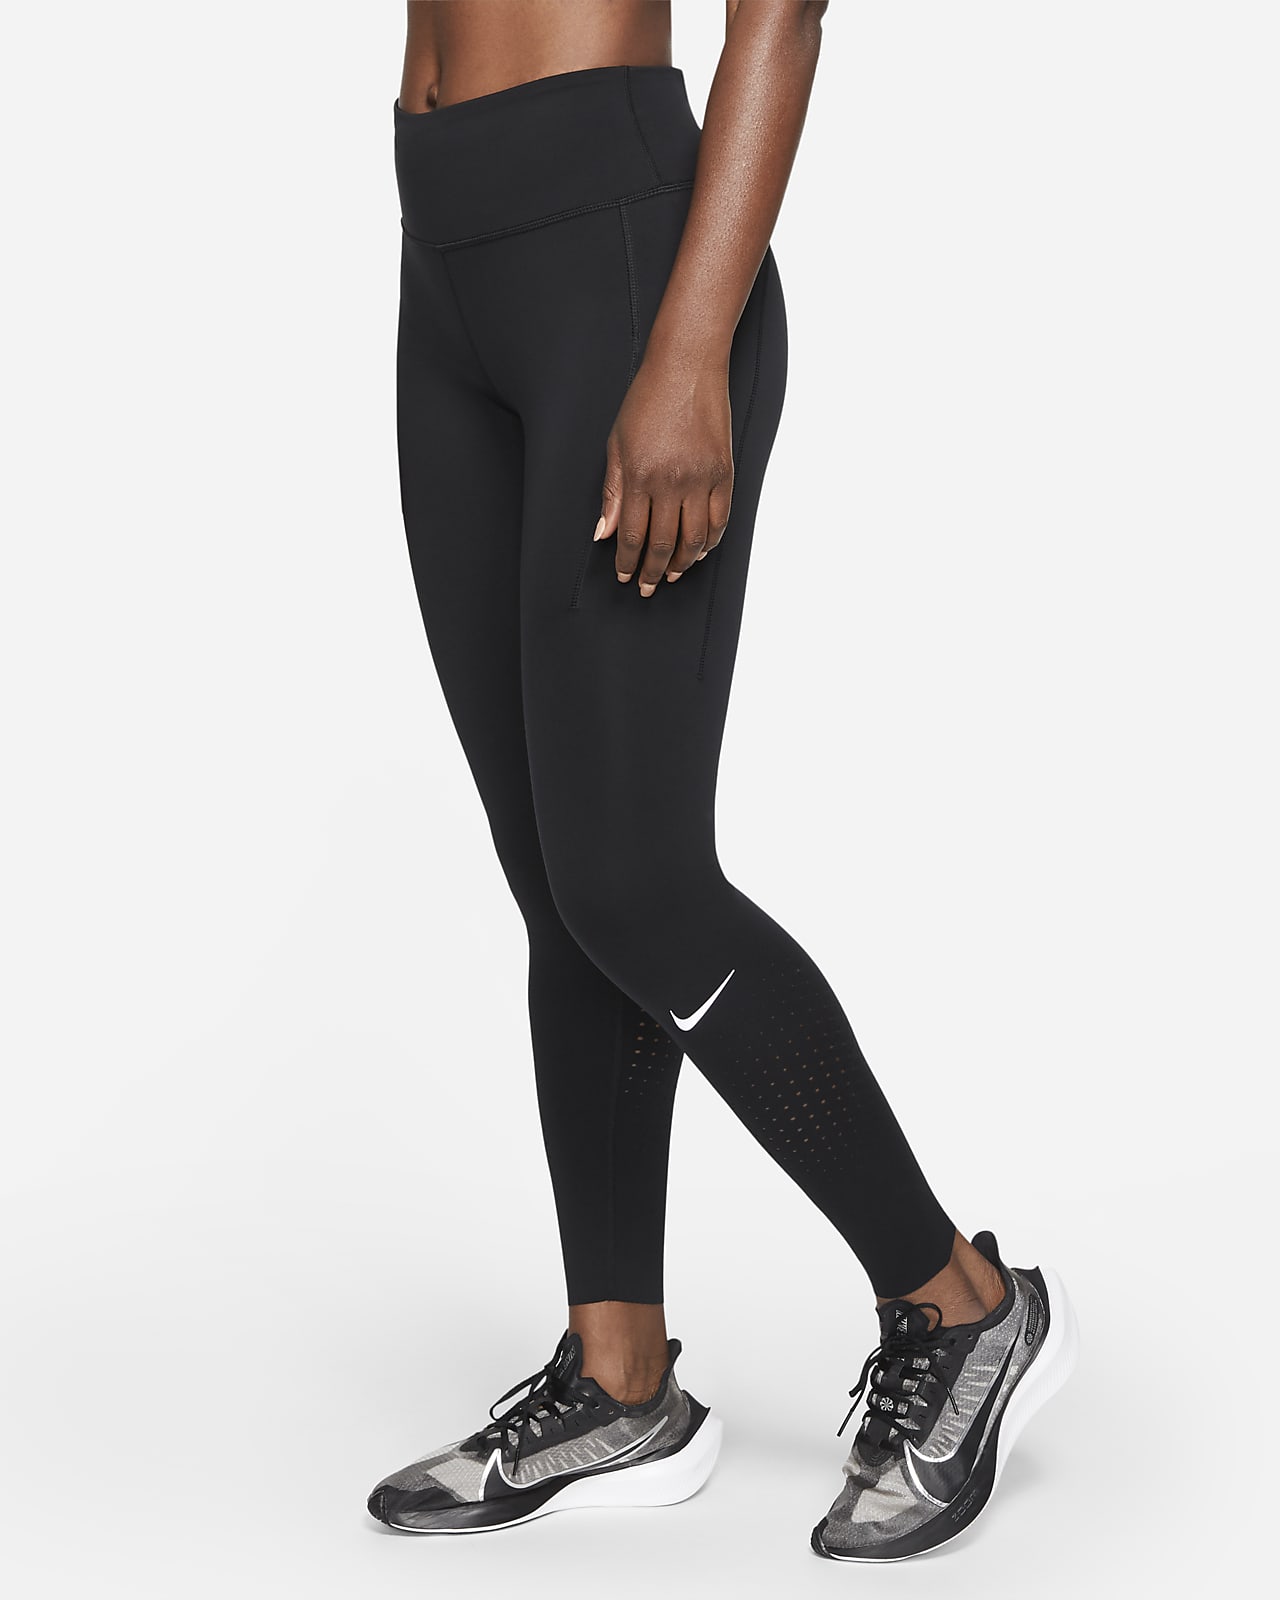 Nike Epic Luxe Women's Running Leggings 